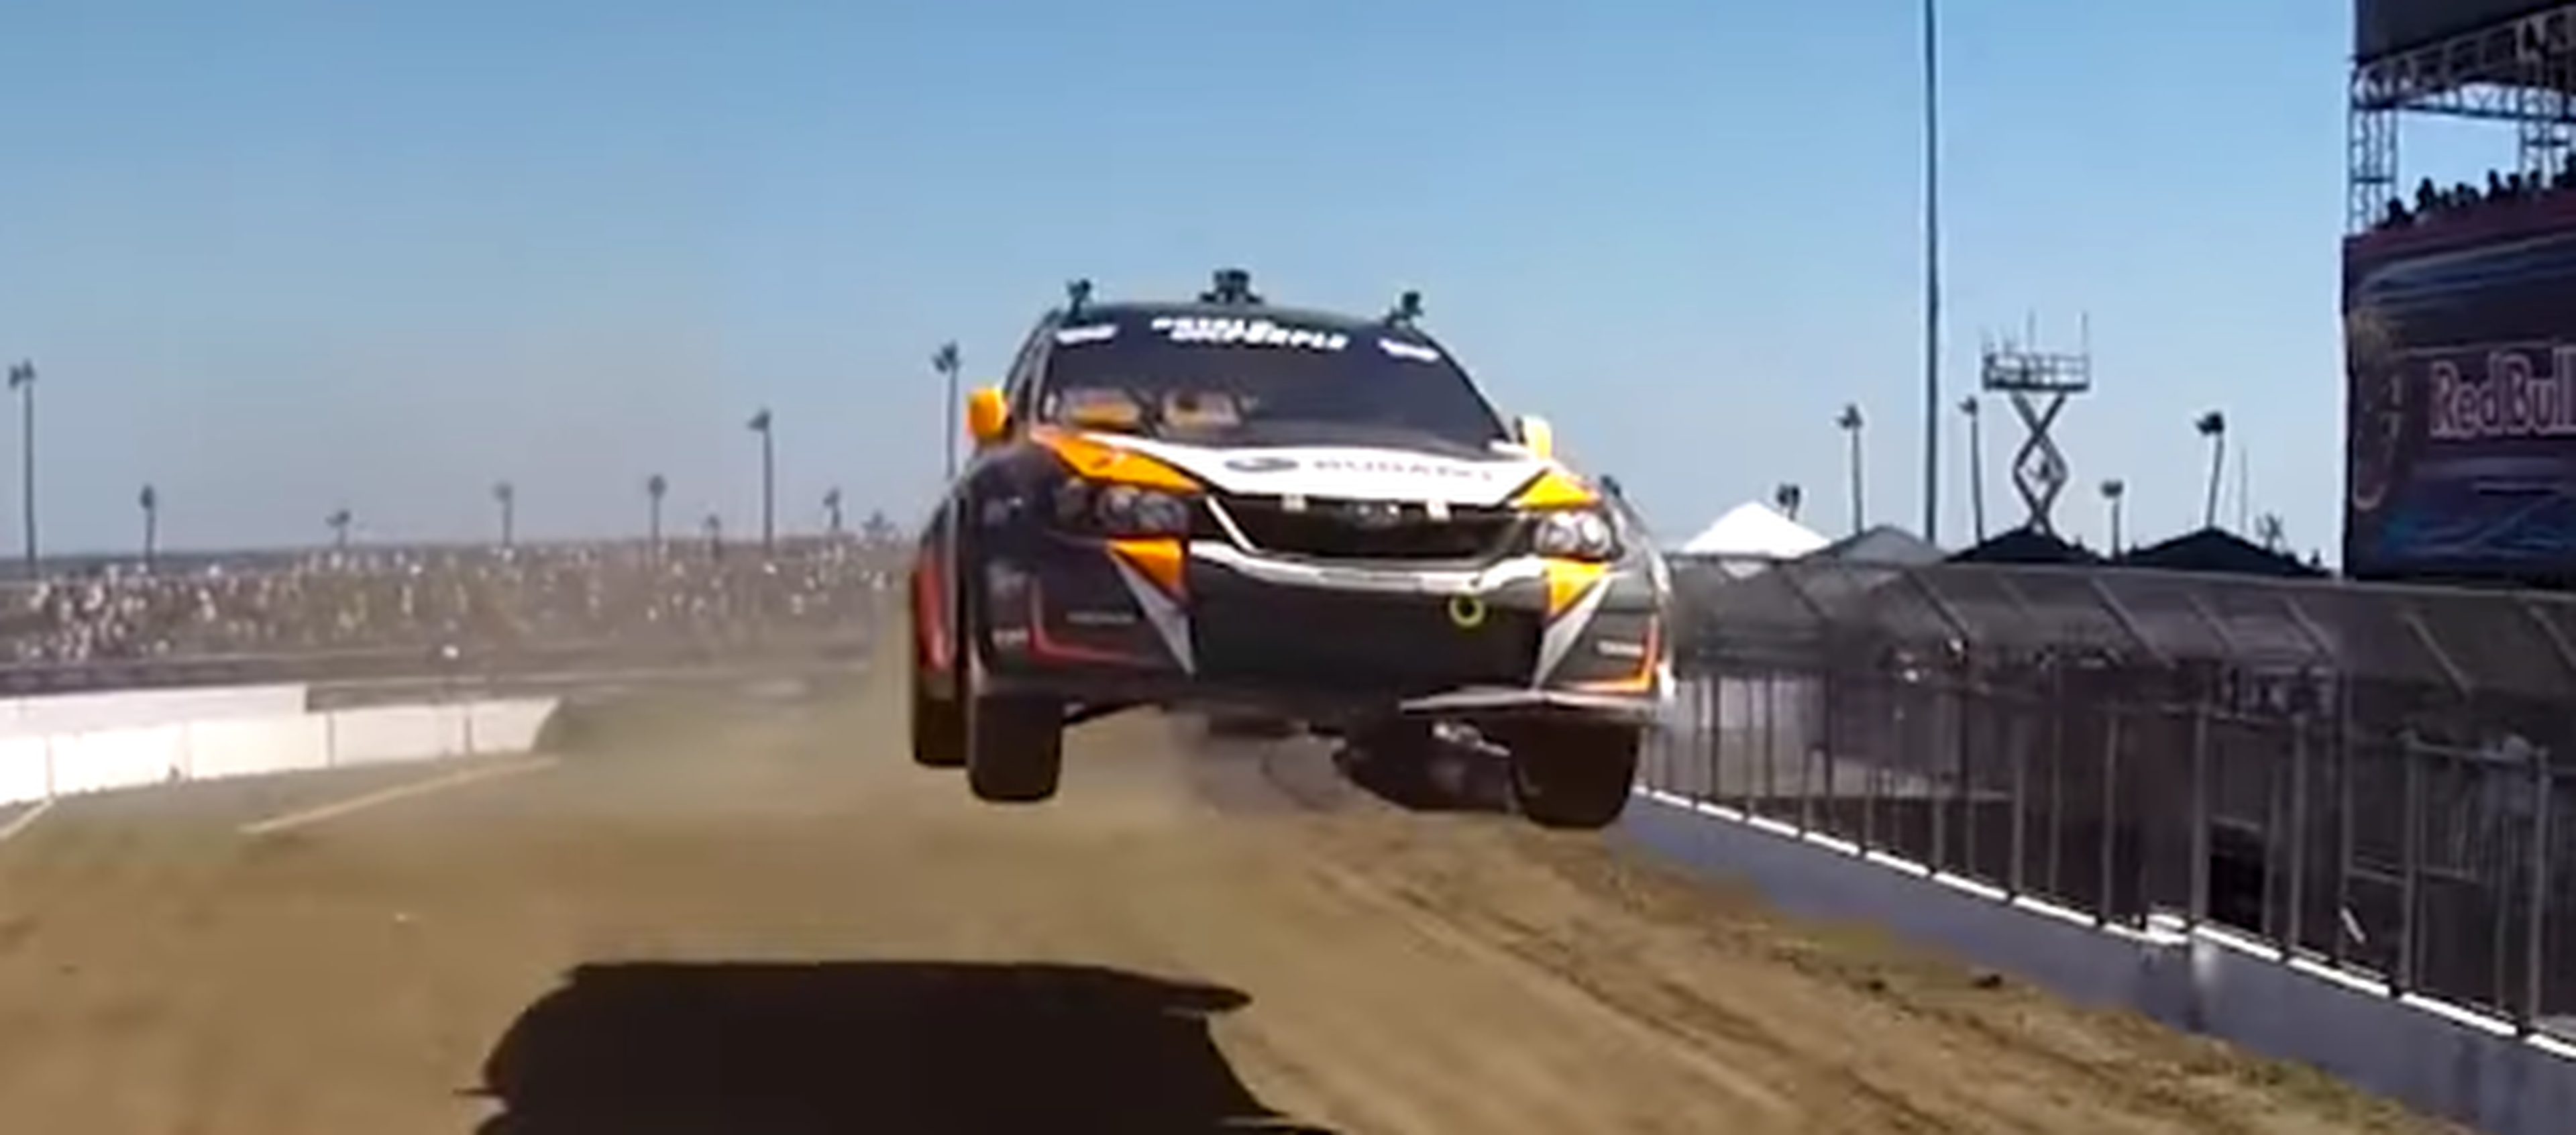 VÍDEO: ¿Necesitas adrenalina? ¡Ahí va! De la mano de Subaru